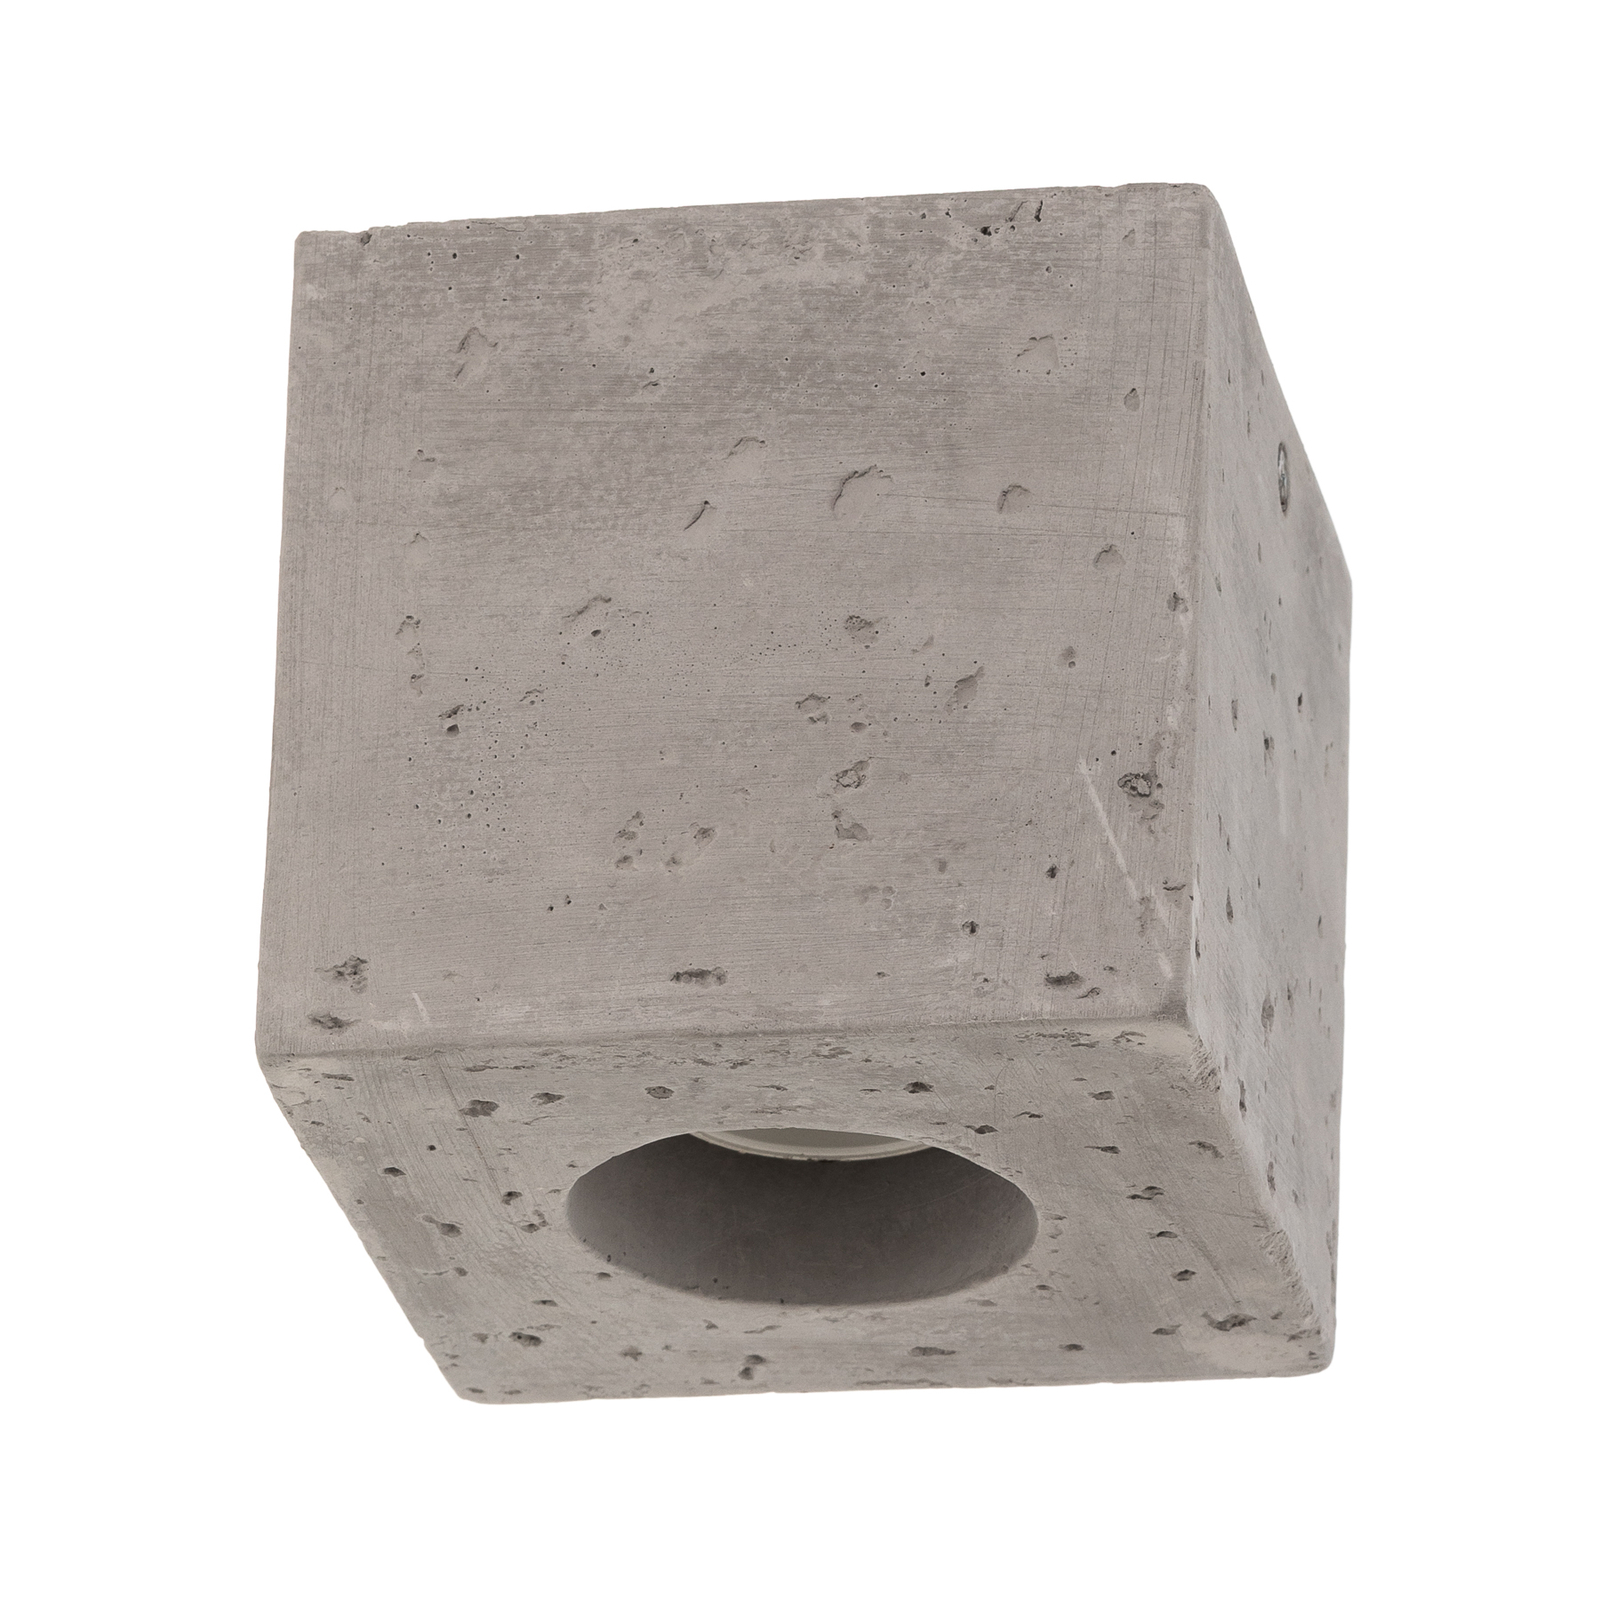 Akira taklampe av betong i terningform